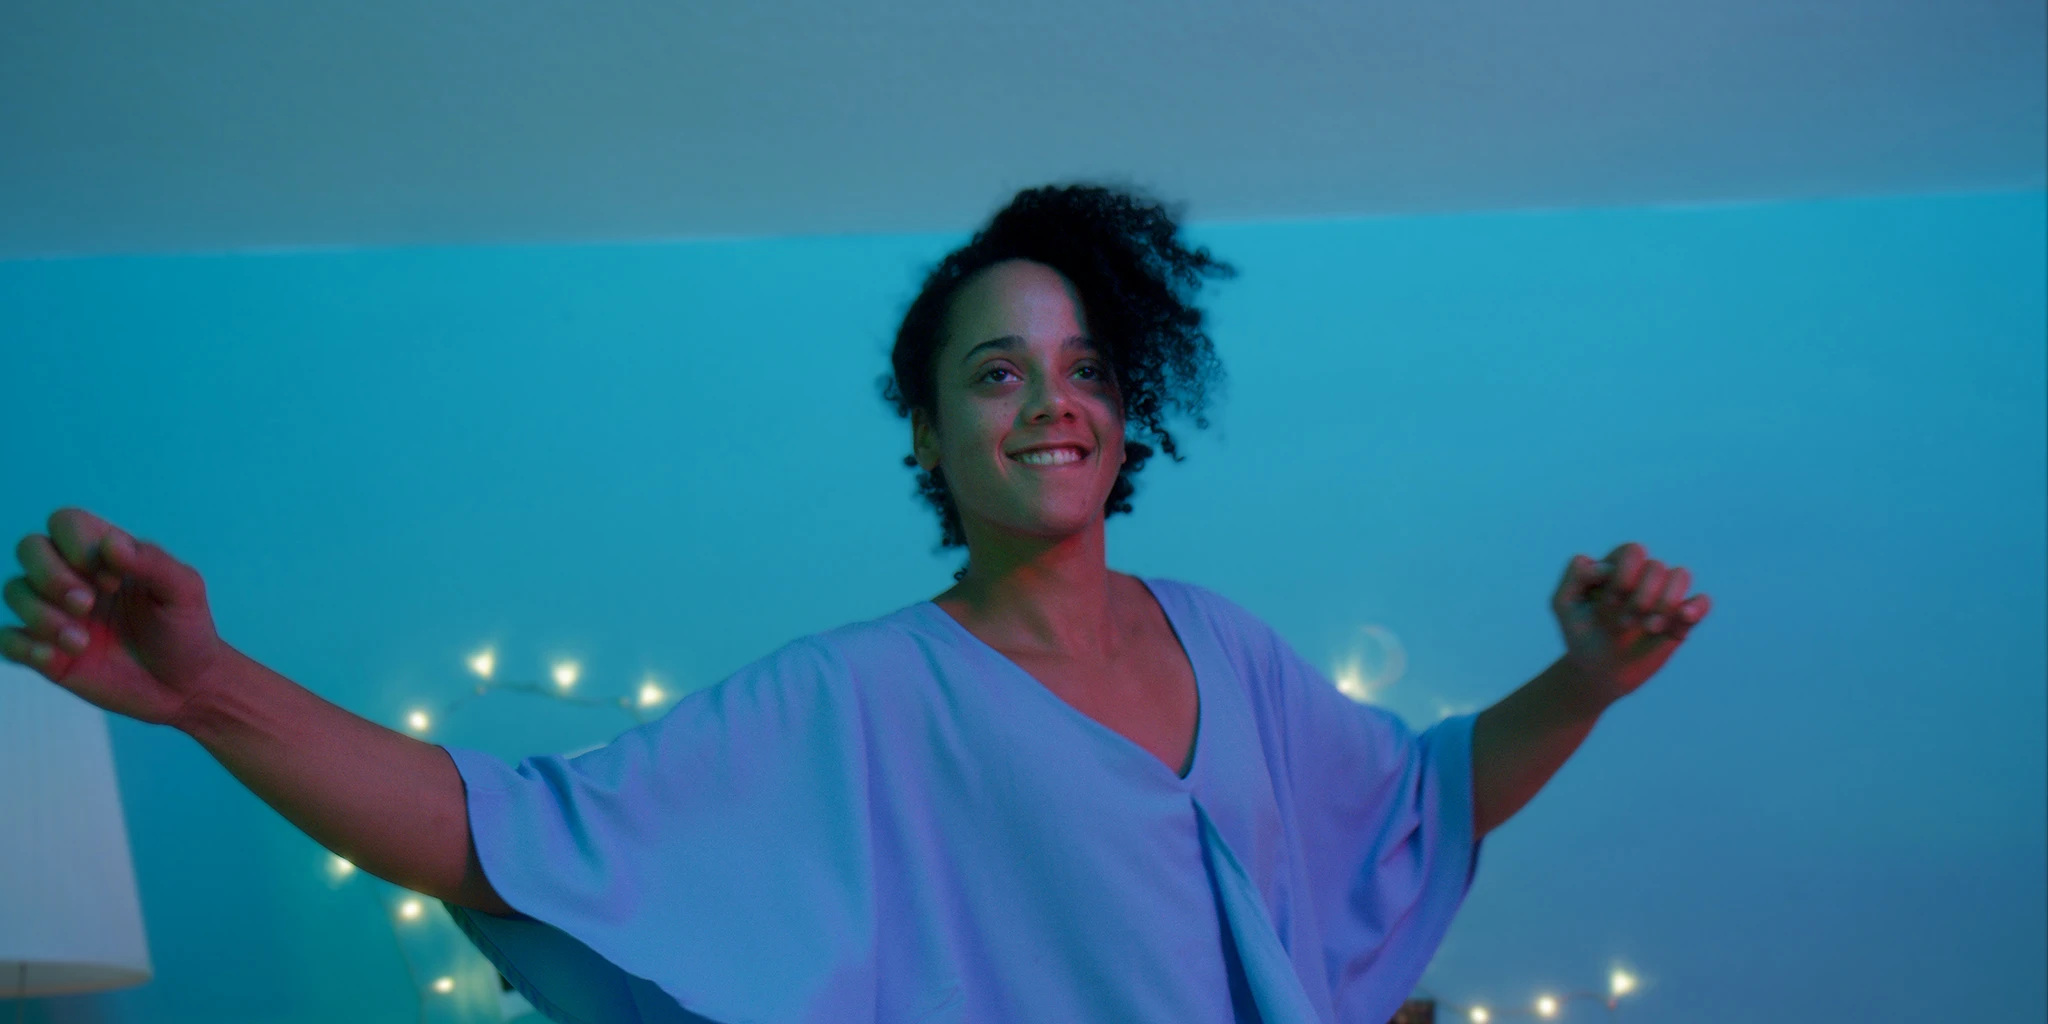 Eine junge Frau (Shari Asha Crosson) tanzt offen und ausgelassen vor eine blau-grÃ¼nen Wand. Im Hintergrund ist eine Lichterkette.